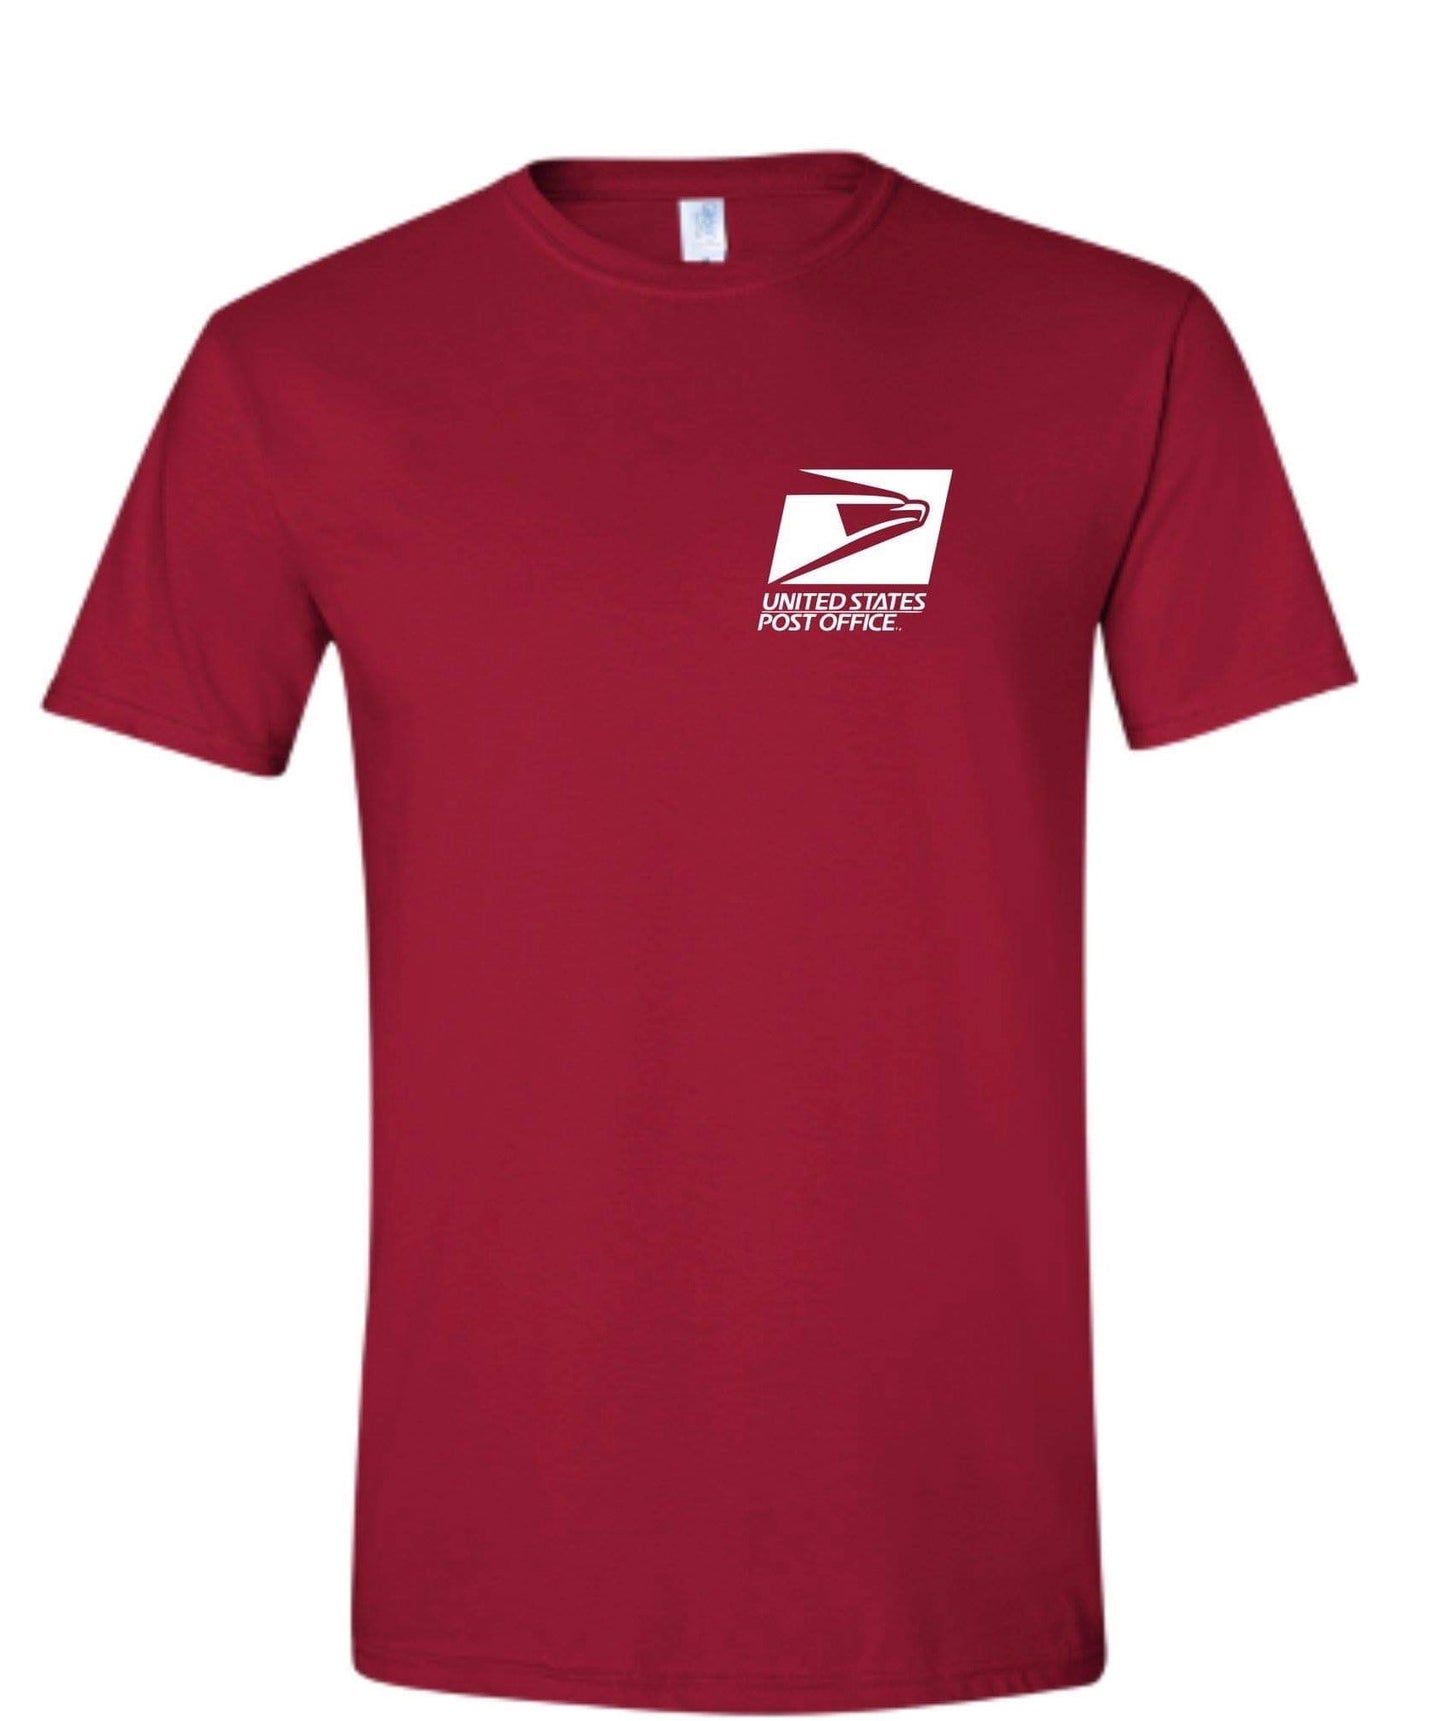 Post Office Shirt